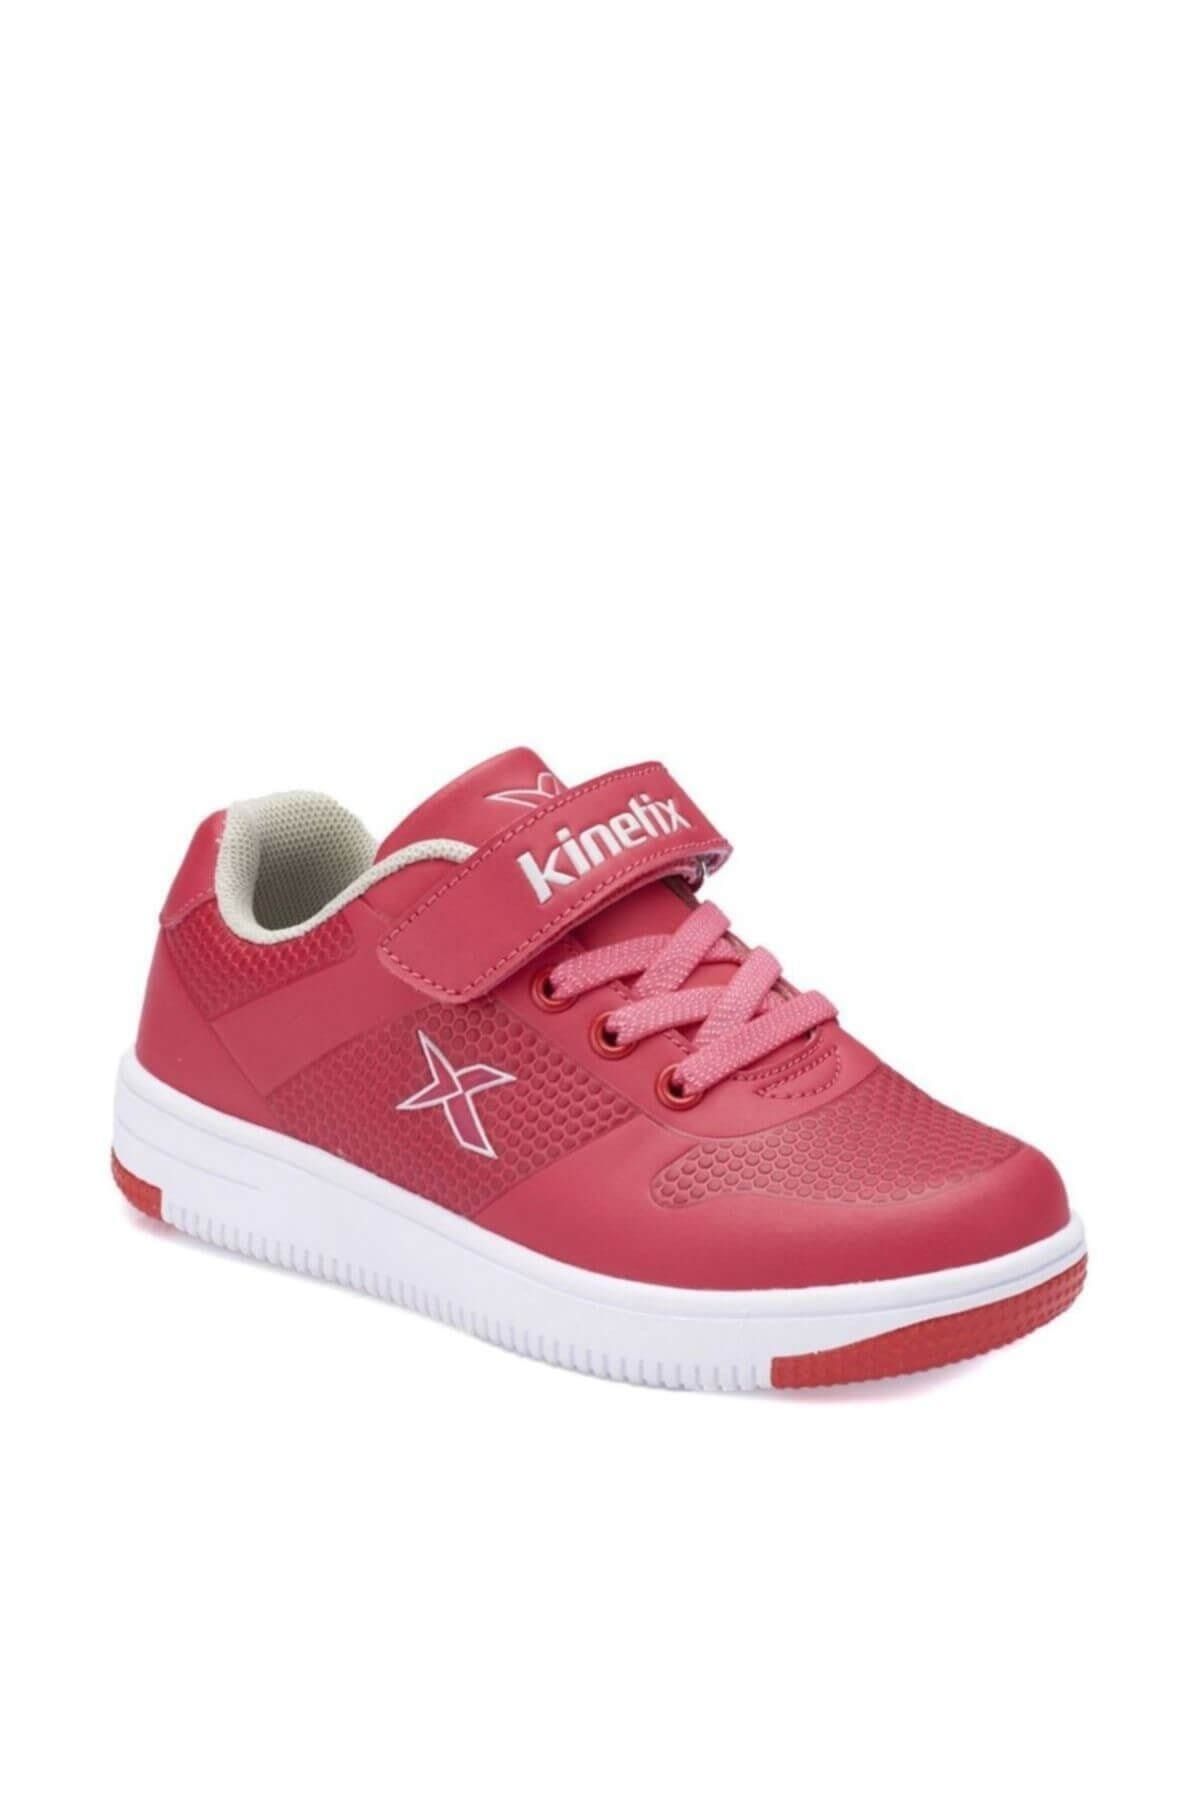 Kinetix Dinro Koyu Fuşya Açık Gri Kız Çocuk Sneaker Ayakkabı 100321999